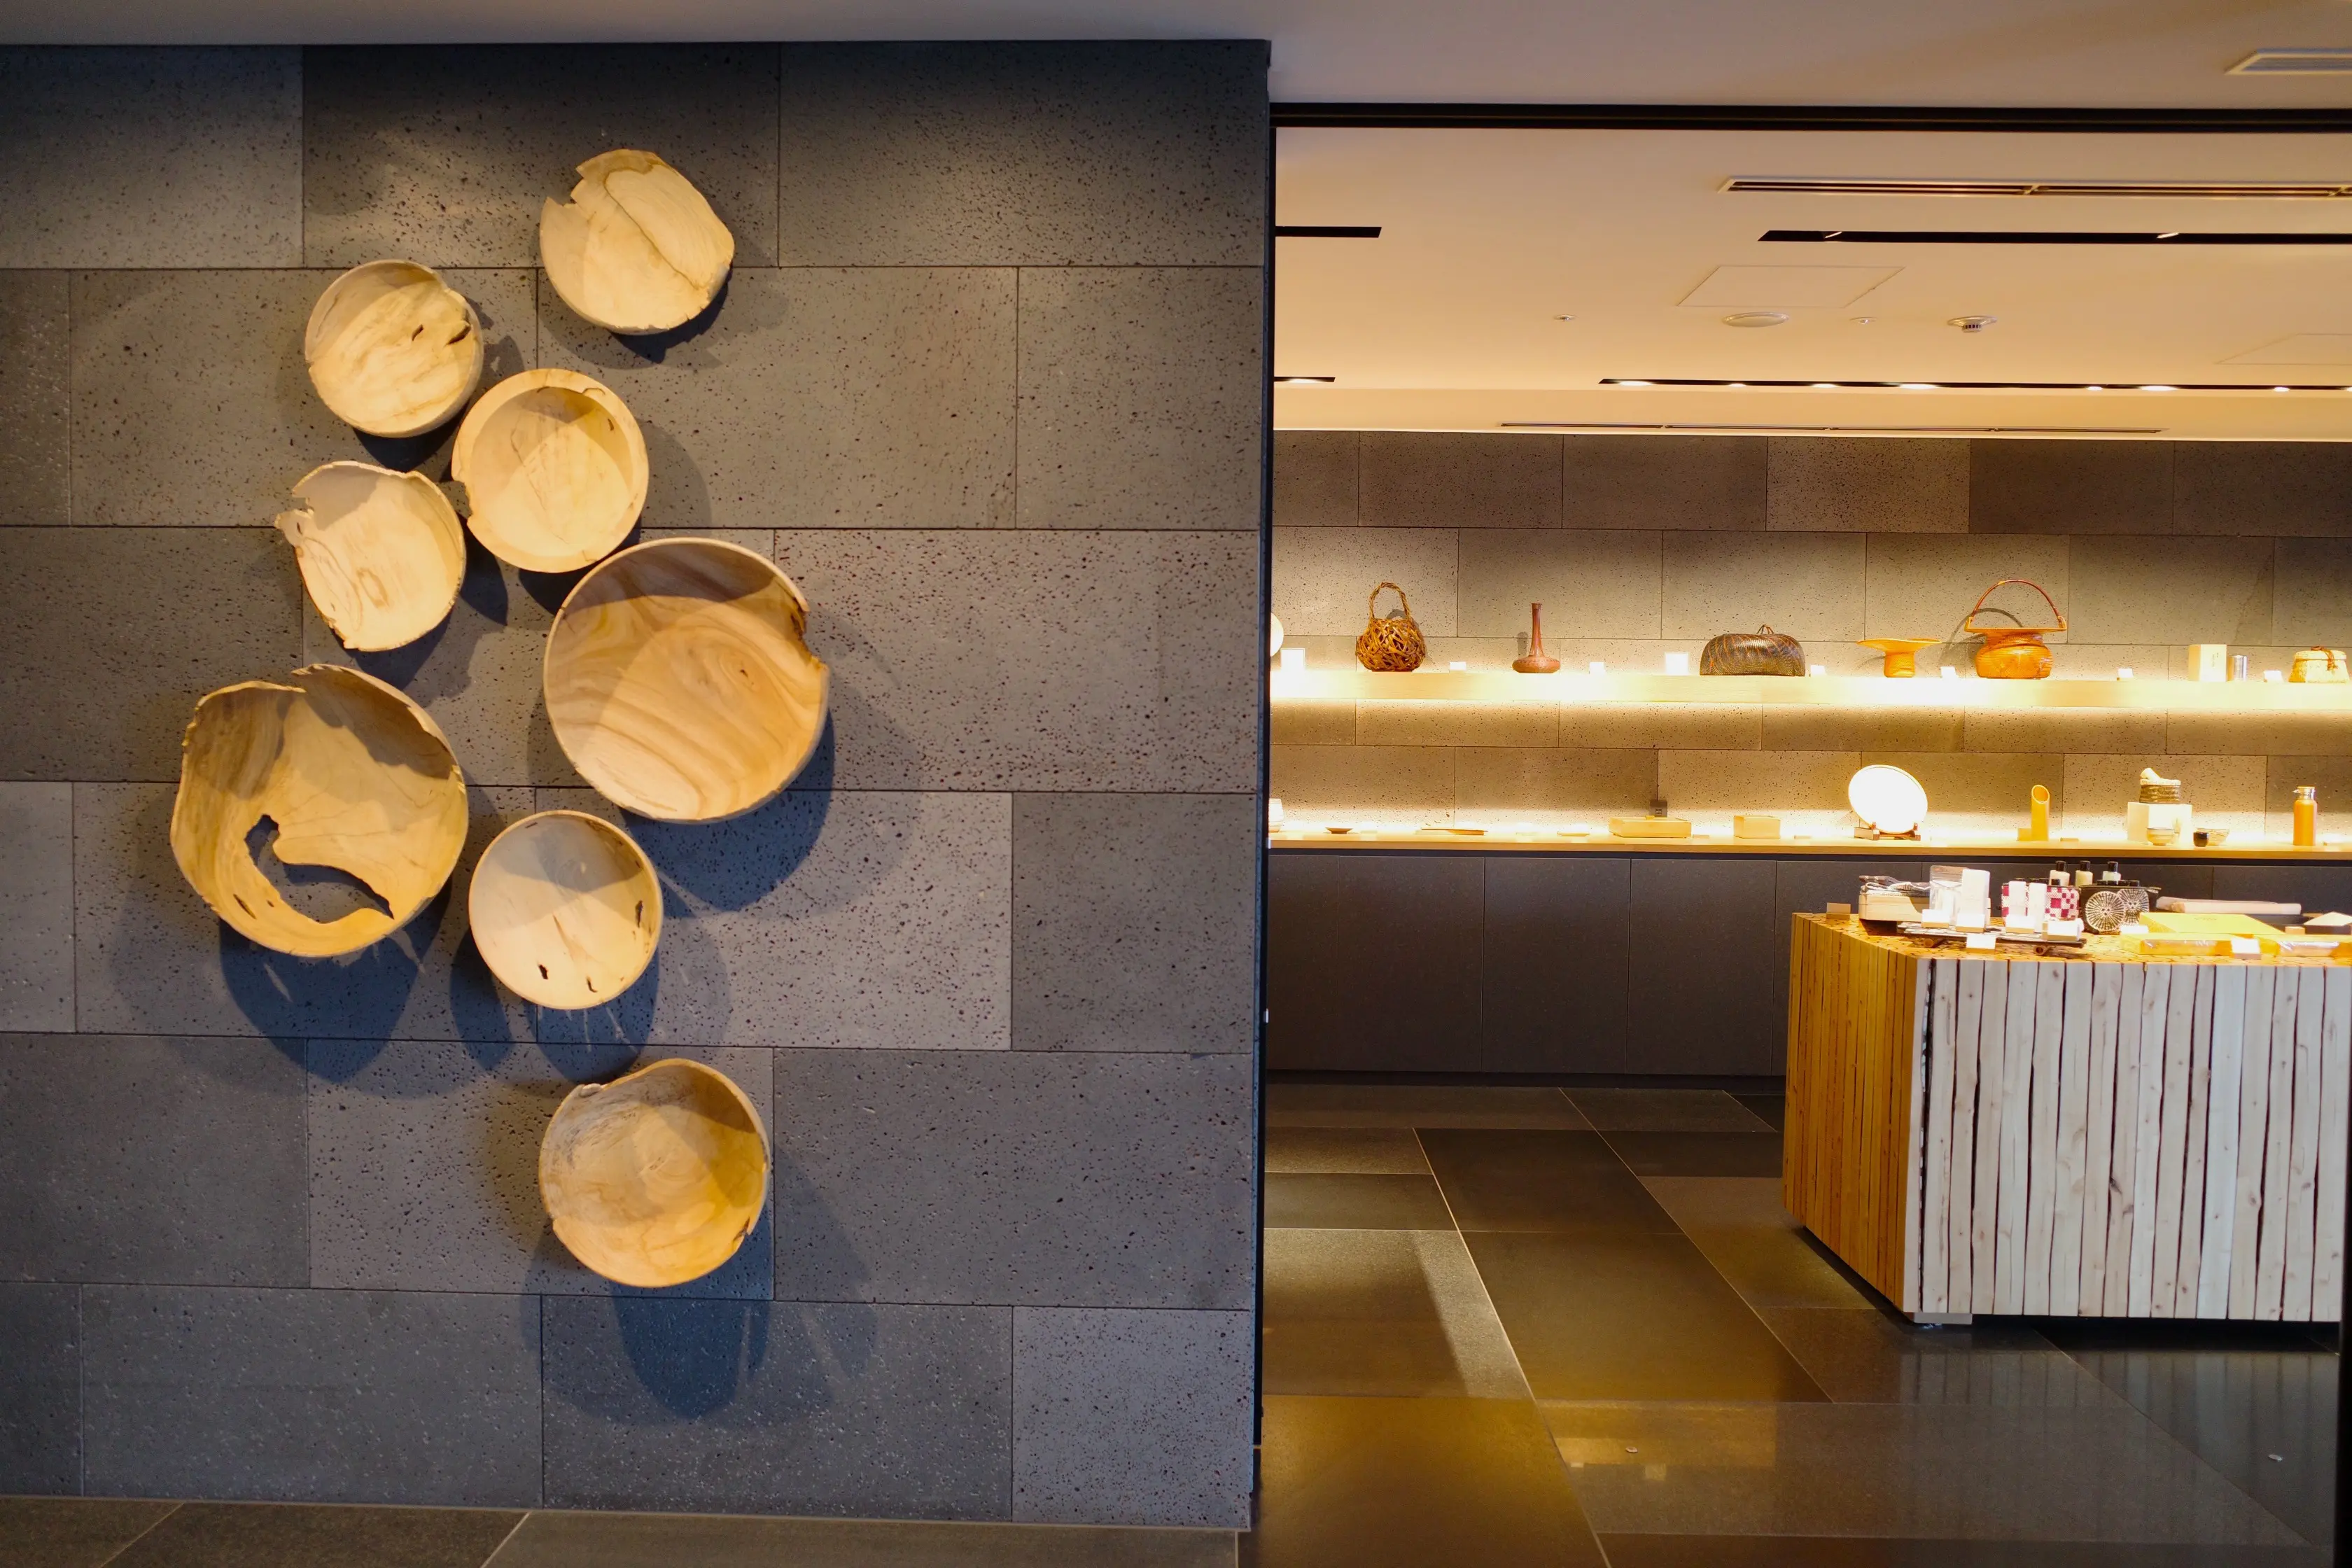 工芸品やお土産を扱うギャラリーにある間伐材を利用した作品は、 大分在住のアーティスト・運天達也さんによるもの。